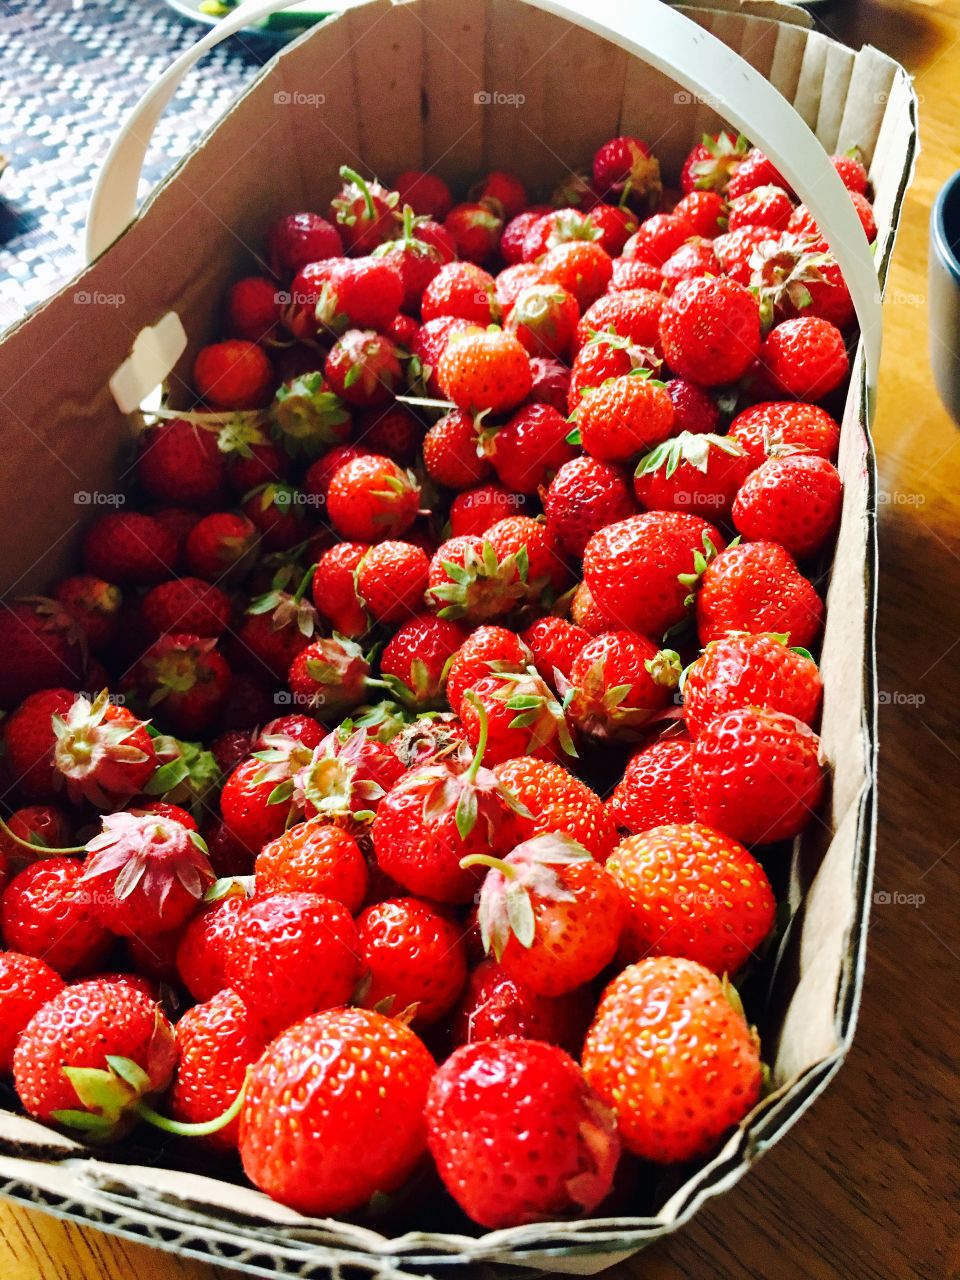 Strawberries..fresh 